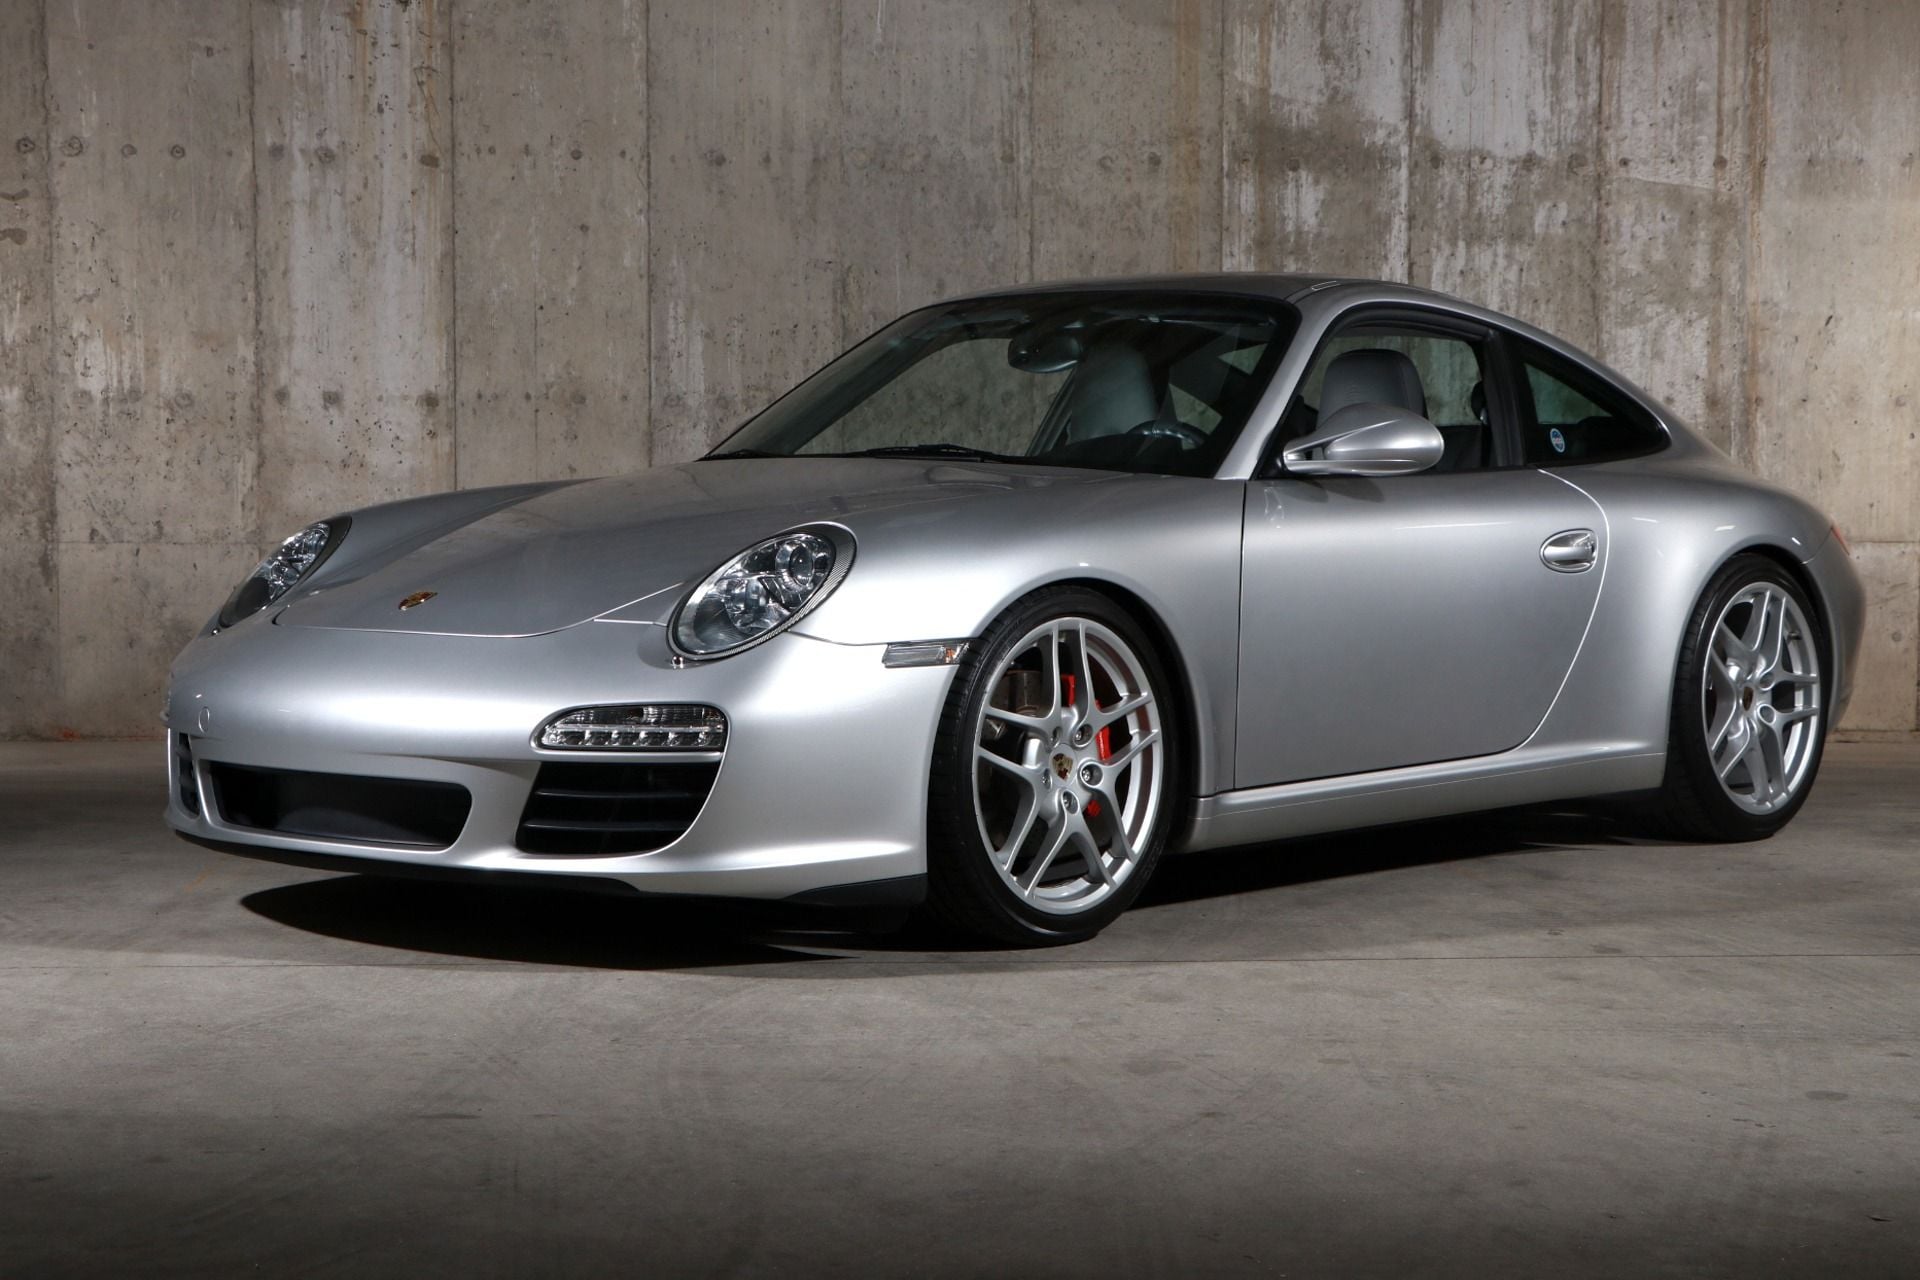 2009 - 2012 Porsche 911 - WTB: 997.2 c2s 6 speed - Used - Grand Rapids, MI 49503, United States